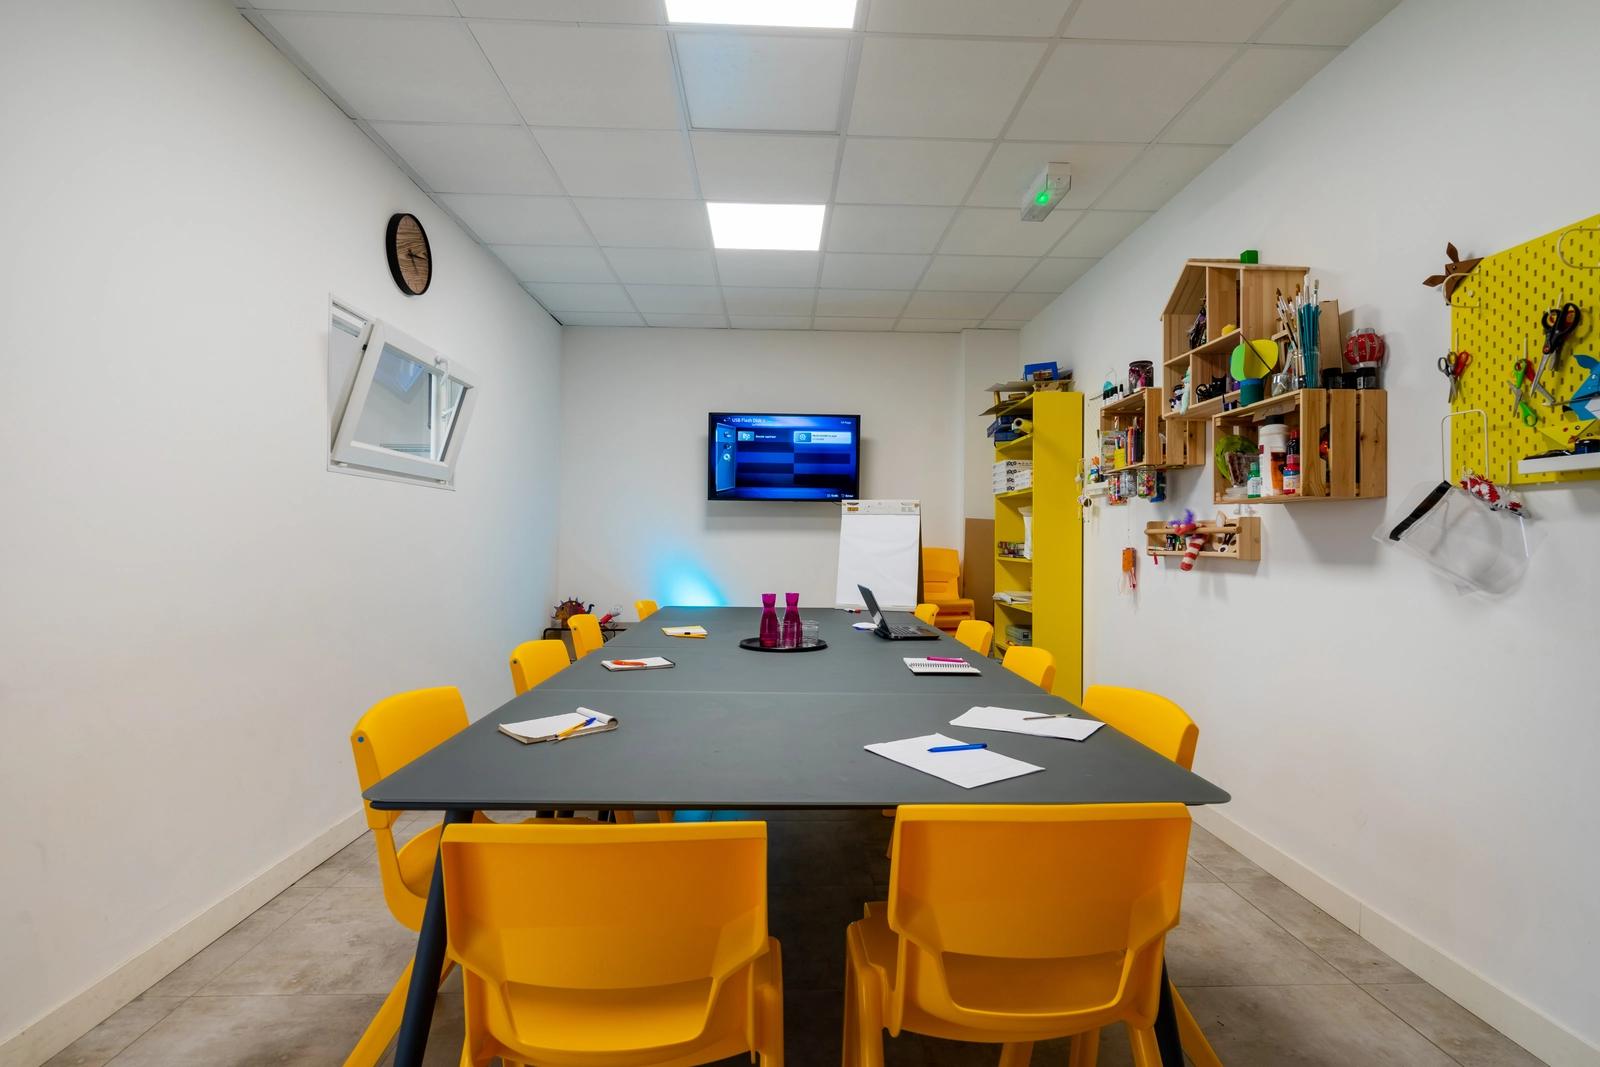 Comedor dentro Una sala colorida para sus reuniones - 0